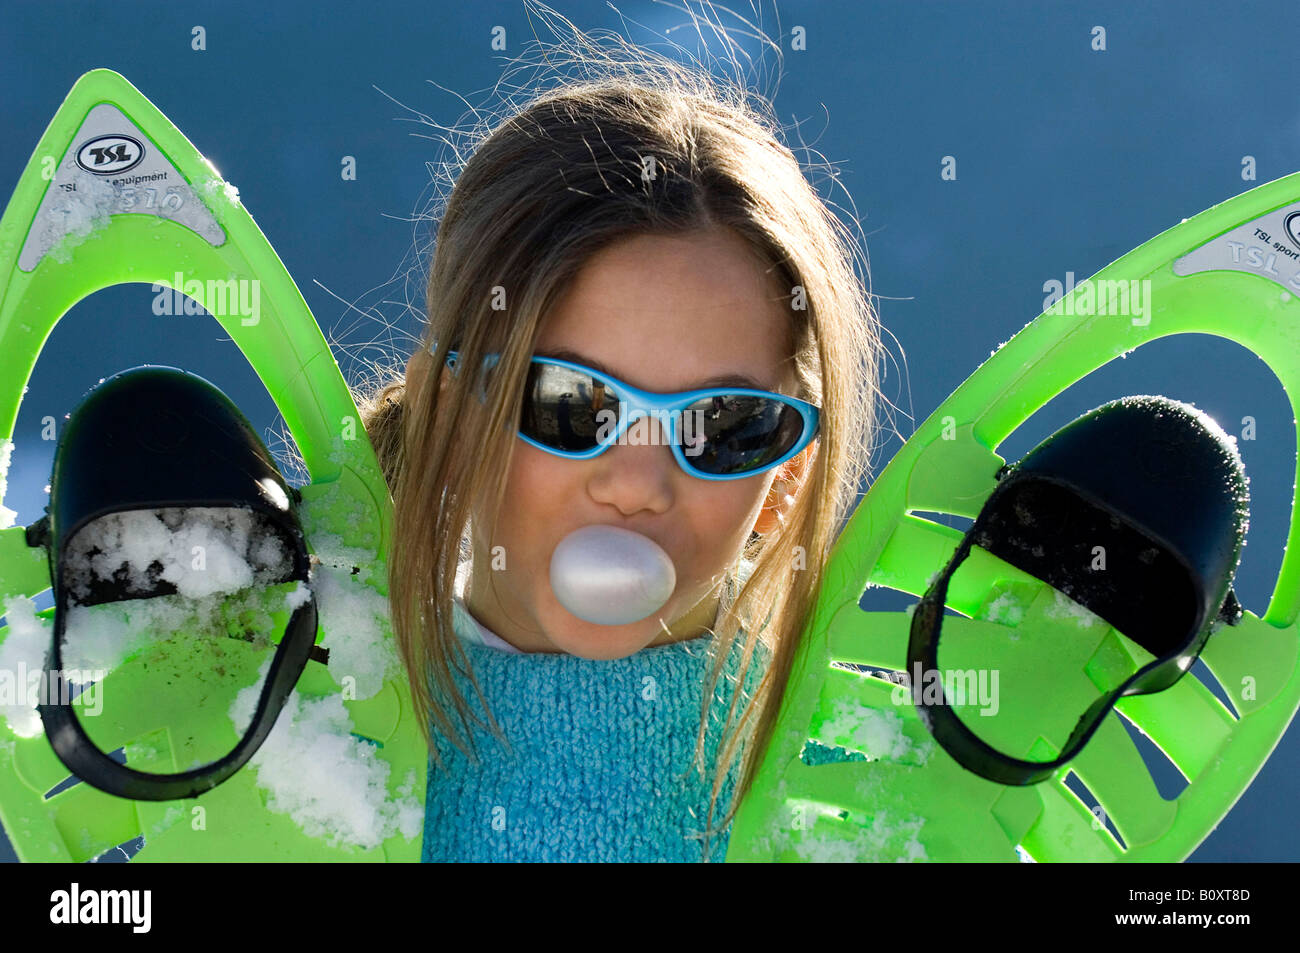 Mädchen mit grünen Skischuhe macht eine Kaugummi-Blase, Frankreich, Alpen Stockfoto